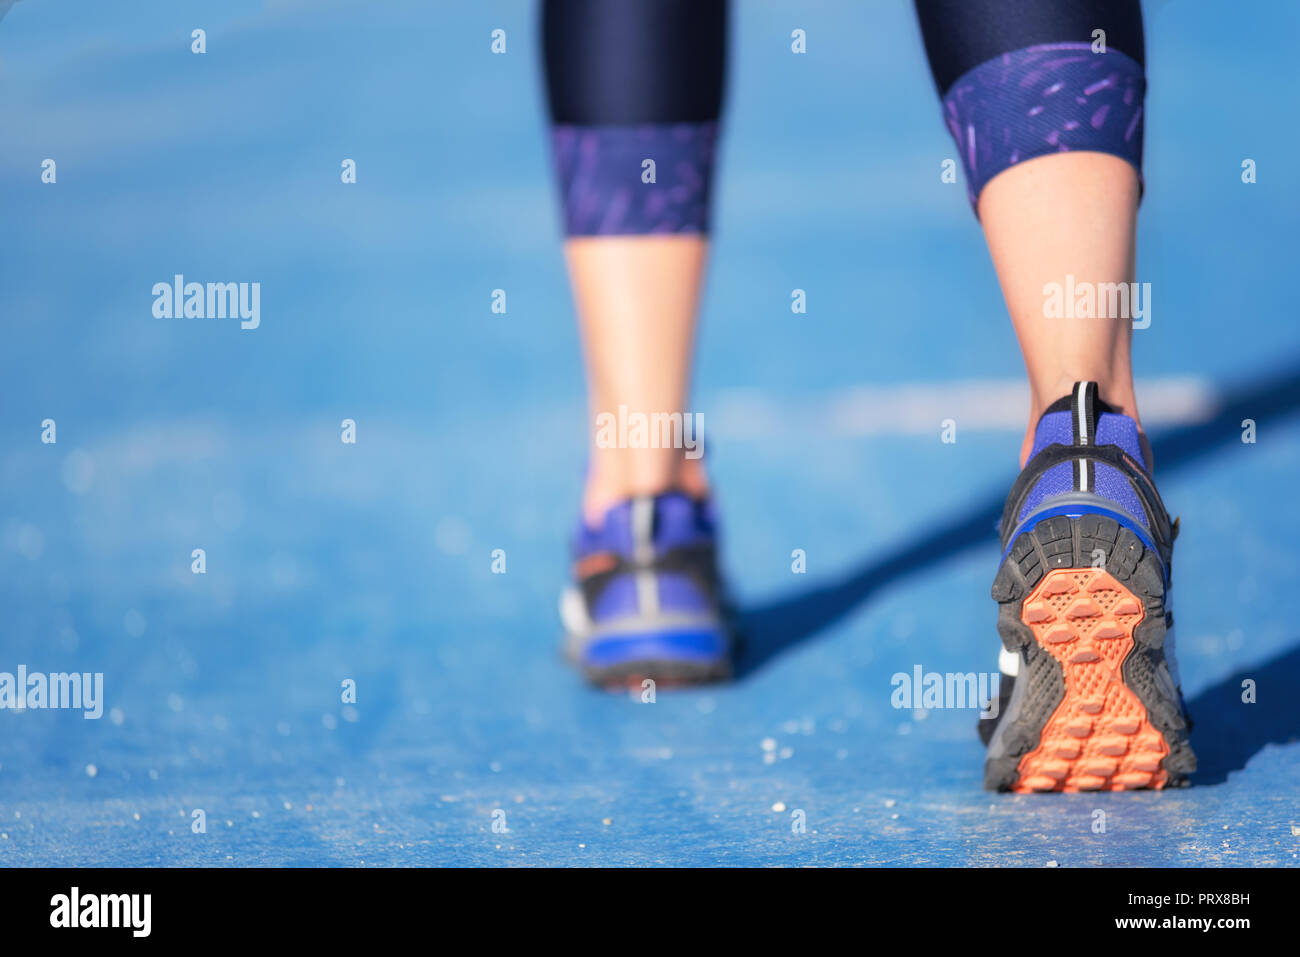 Runner feet running closeup on shoe. woman fitness jog workout welness concept. Stock Photo